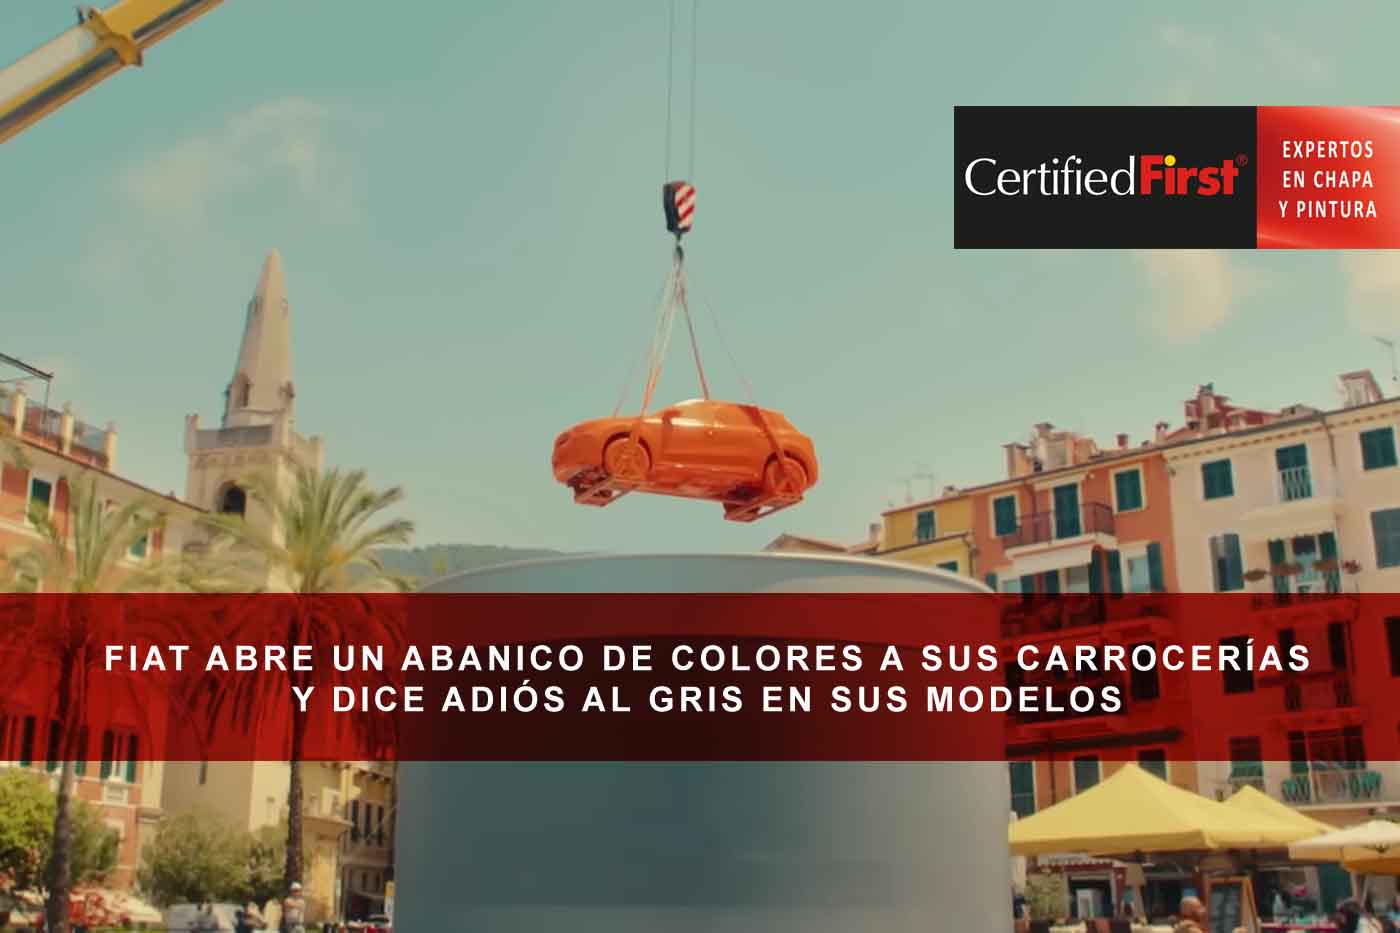 Fiat abre un abanico de colores a sus carrocerías y dice adiós al gris en sus modelos